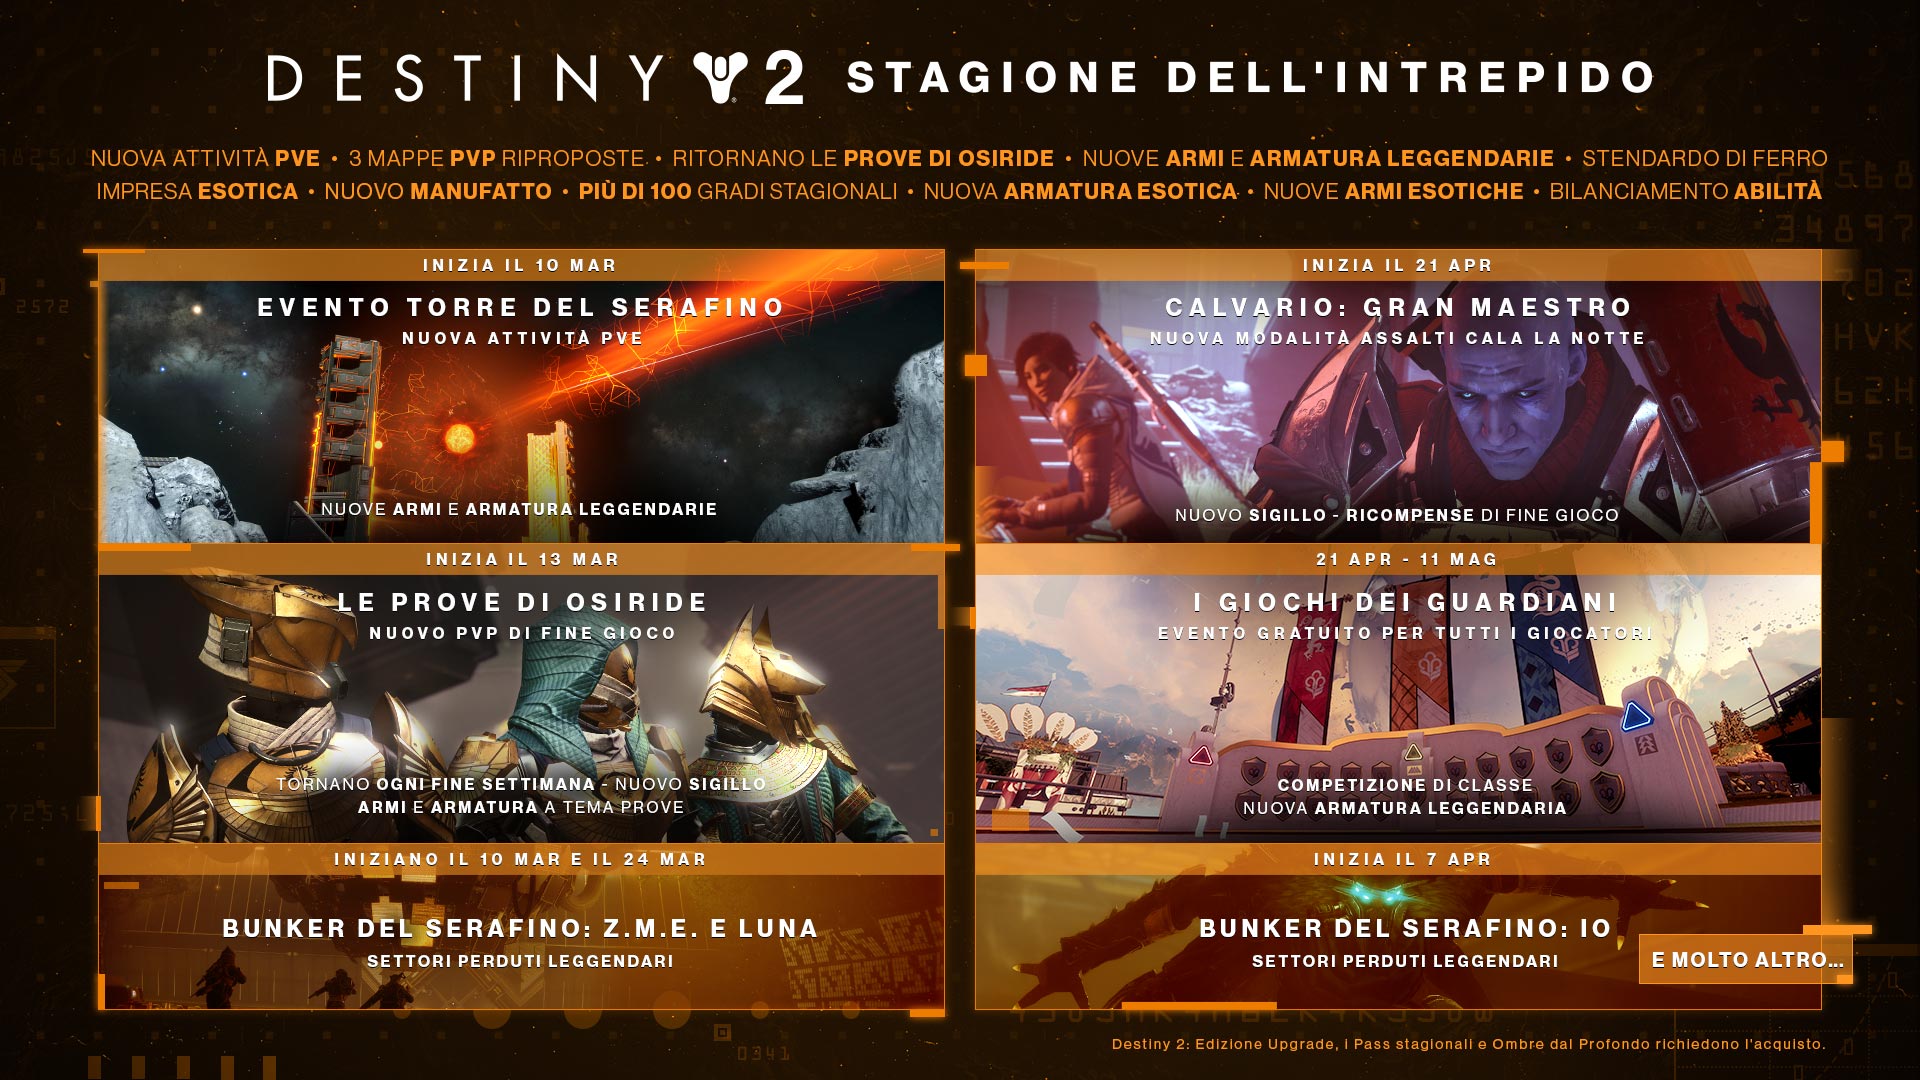 Destiny 2 Stagione dell'Intrepido destiny 2 roadmap